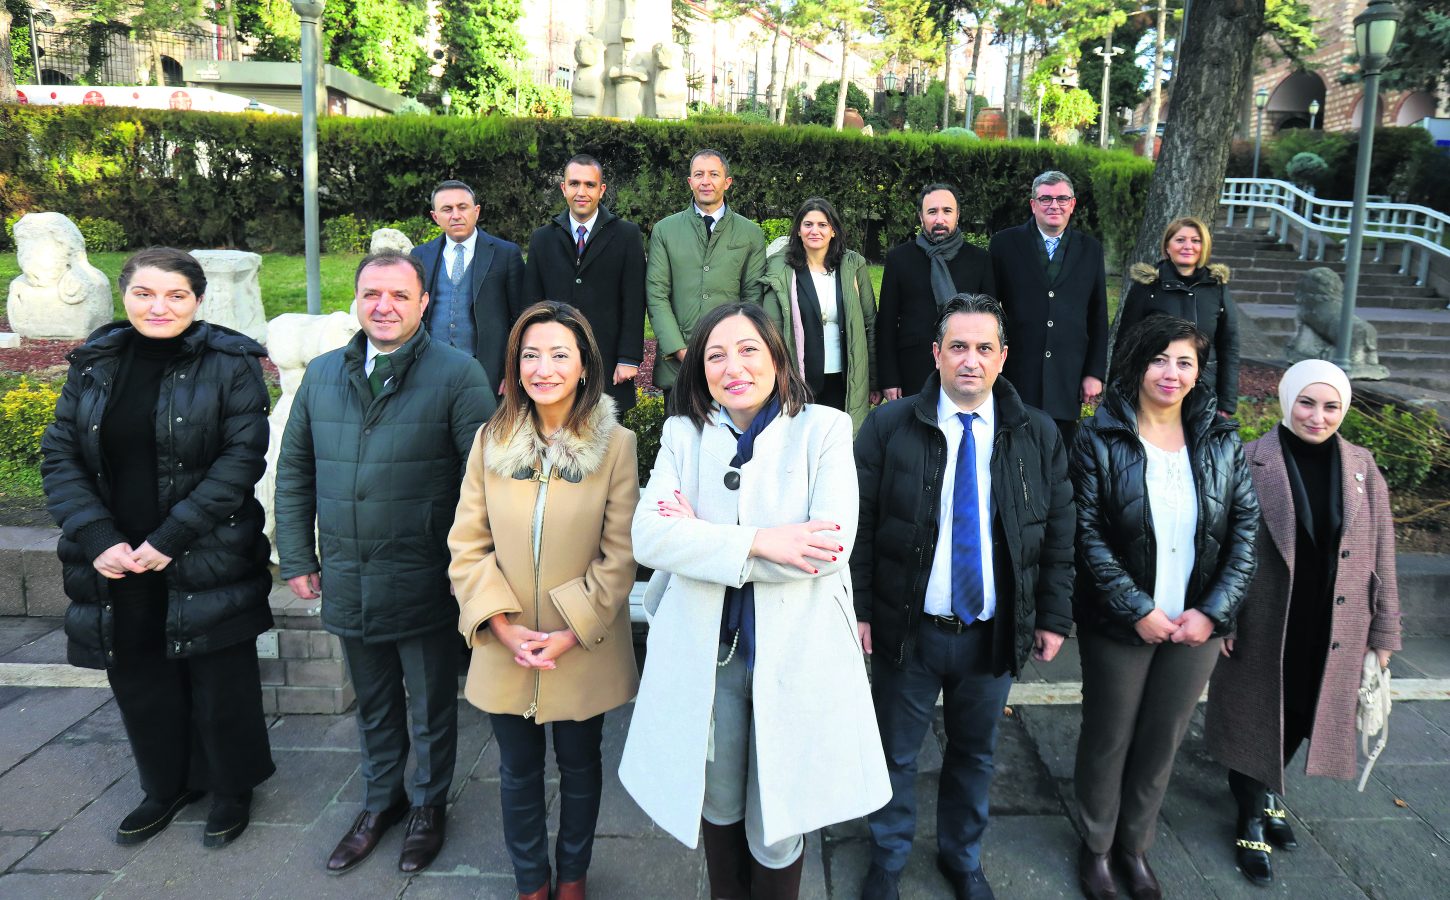 Kaçakçılıkla Mücadele Dairesi Mart 2020’de Daire Başkanlığı’na çevrilince Zeynep Boz’un ekibi de oluşmuş oluyor.